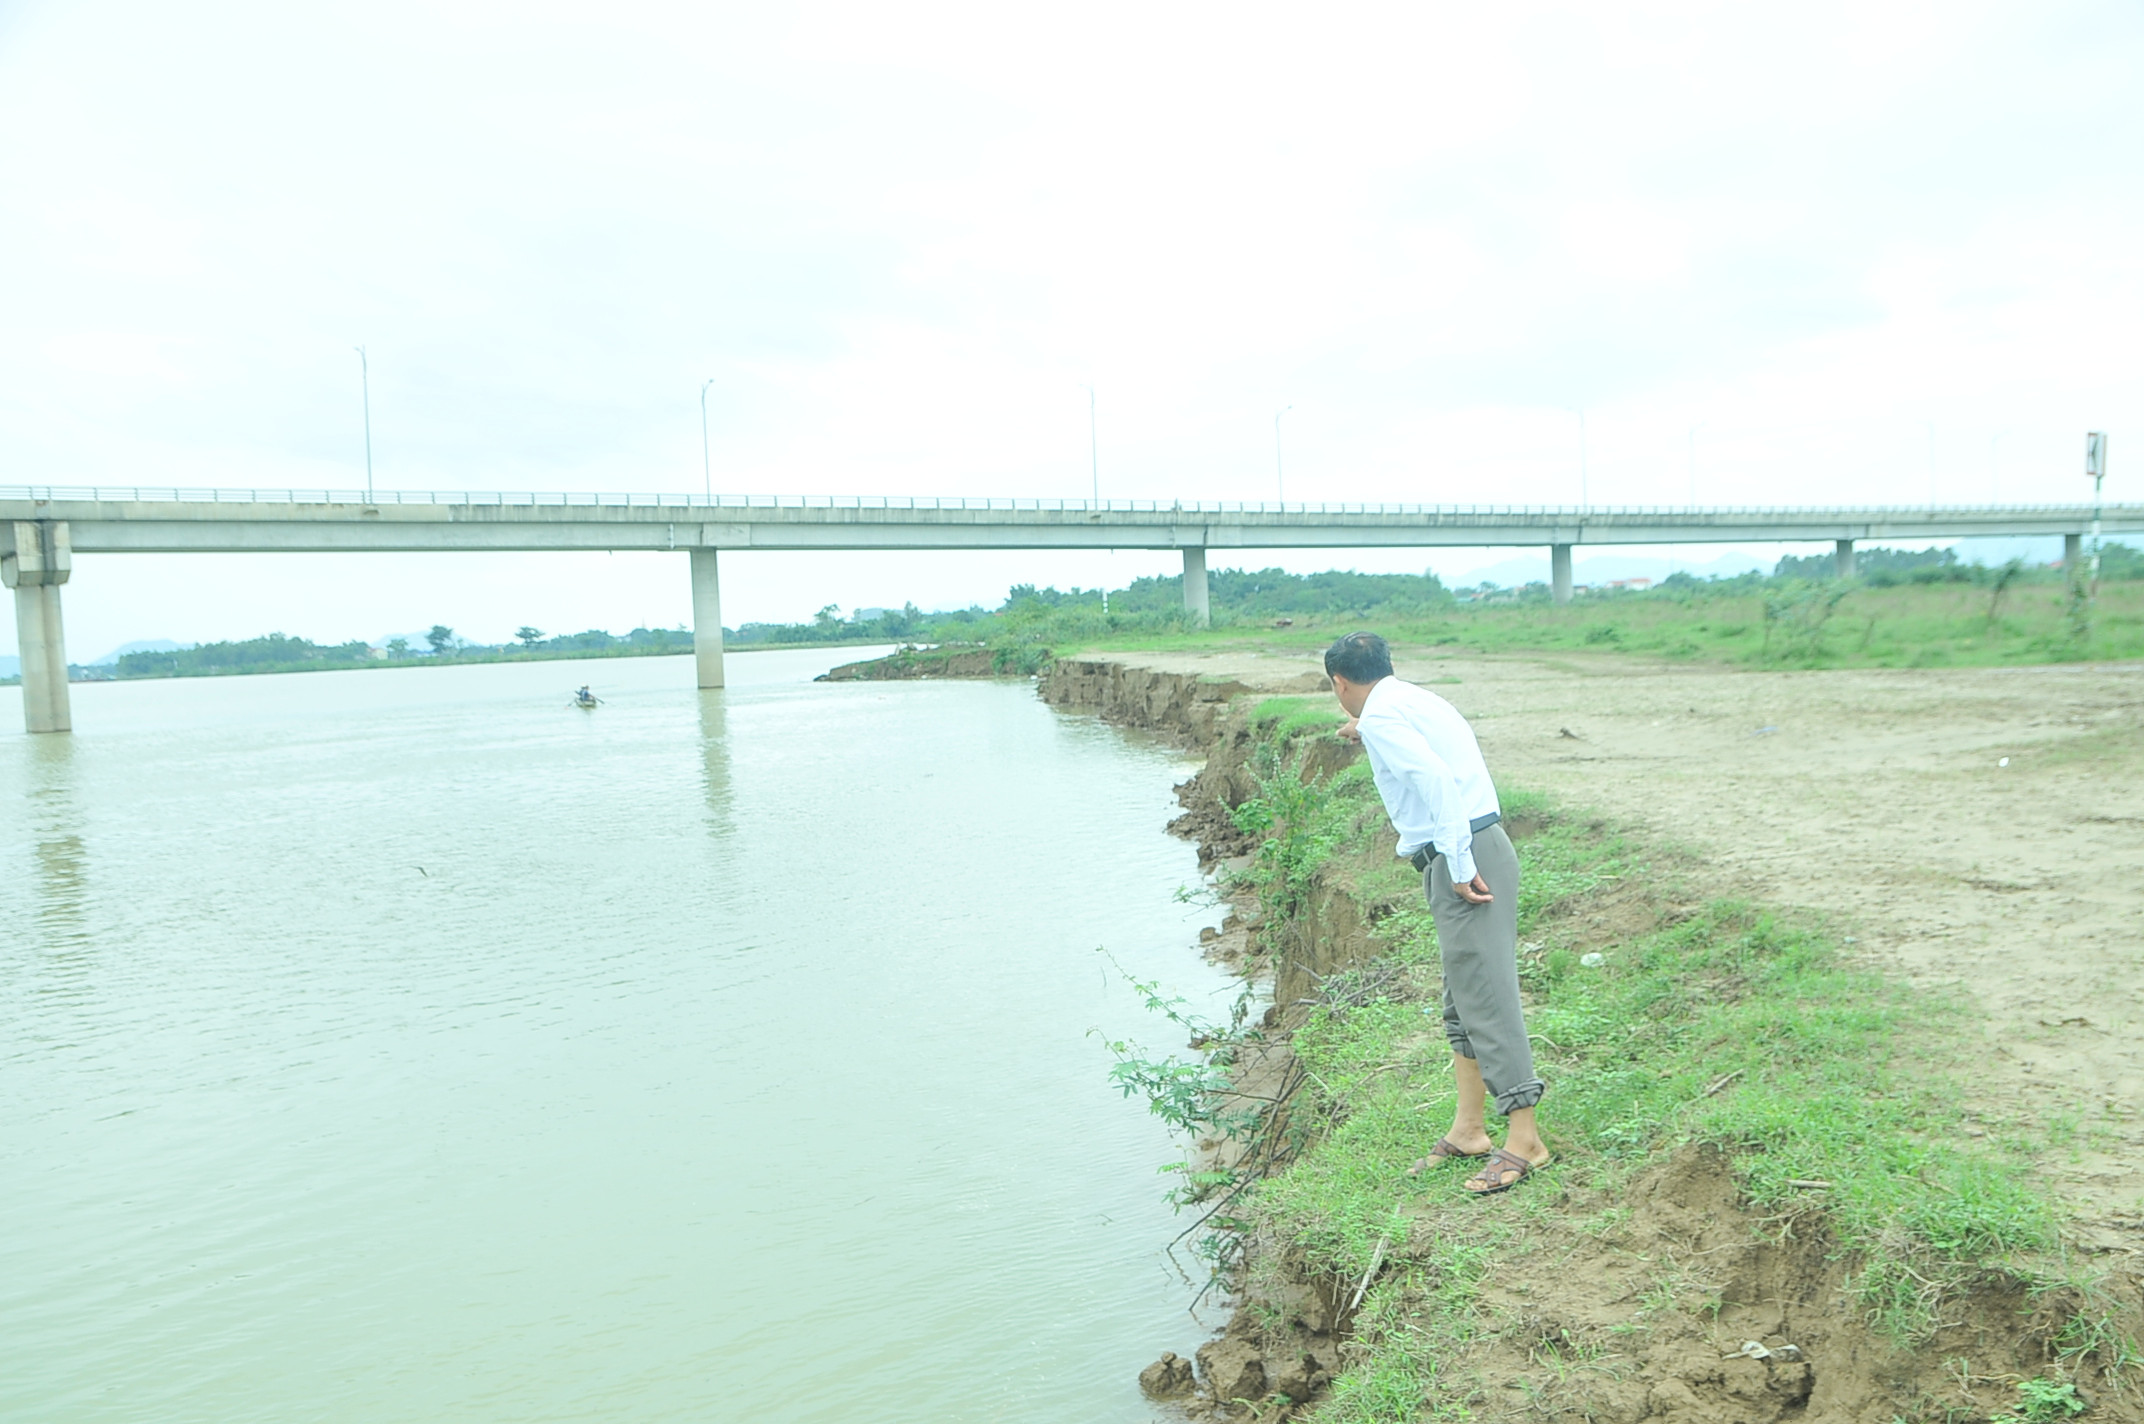 Theo ông Bá, tình trạng sạt lở đã diễn ra vài năm nay, khi cầu Yên Xuân hoàn thành, những xoáy nước dưới chân trụ cầu xô thẳng vào bãi khiến nhiều diện tích đất sản xuất bị sạt lở xuống sông. Ảnh: Tiến Đông